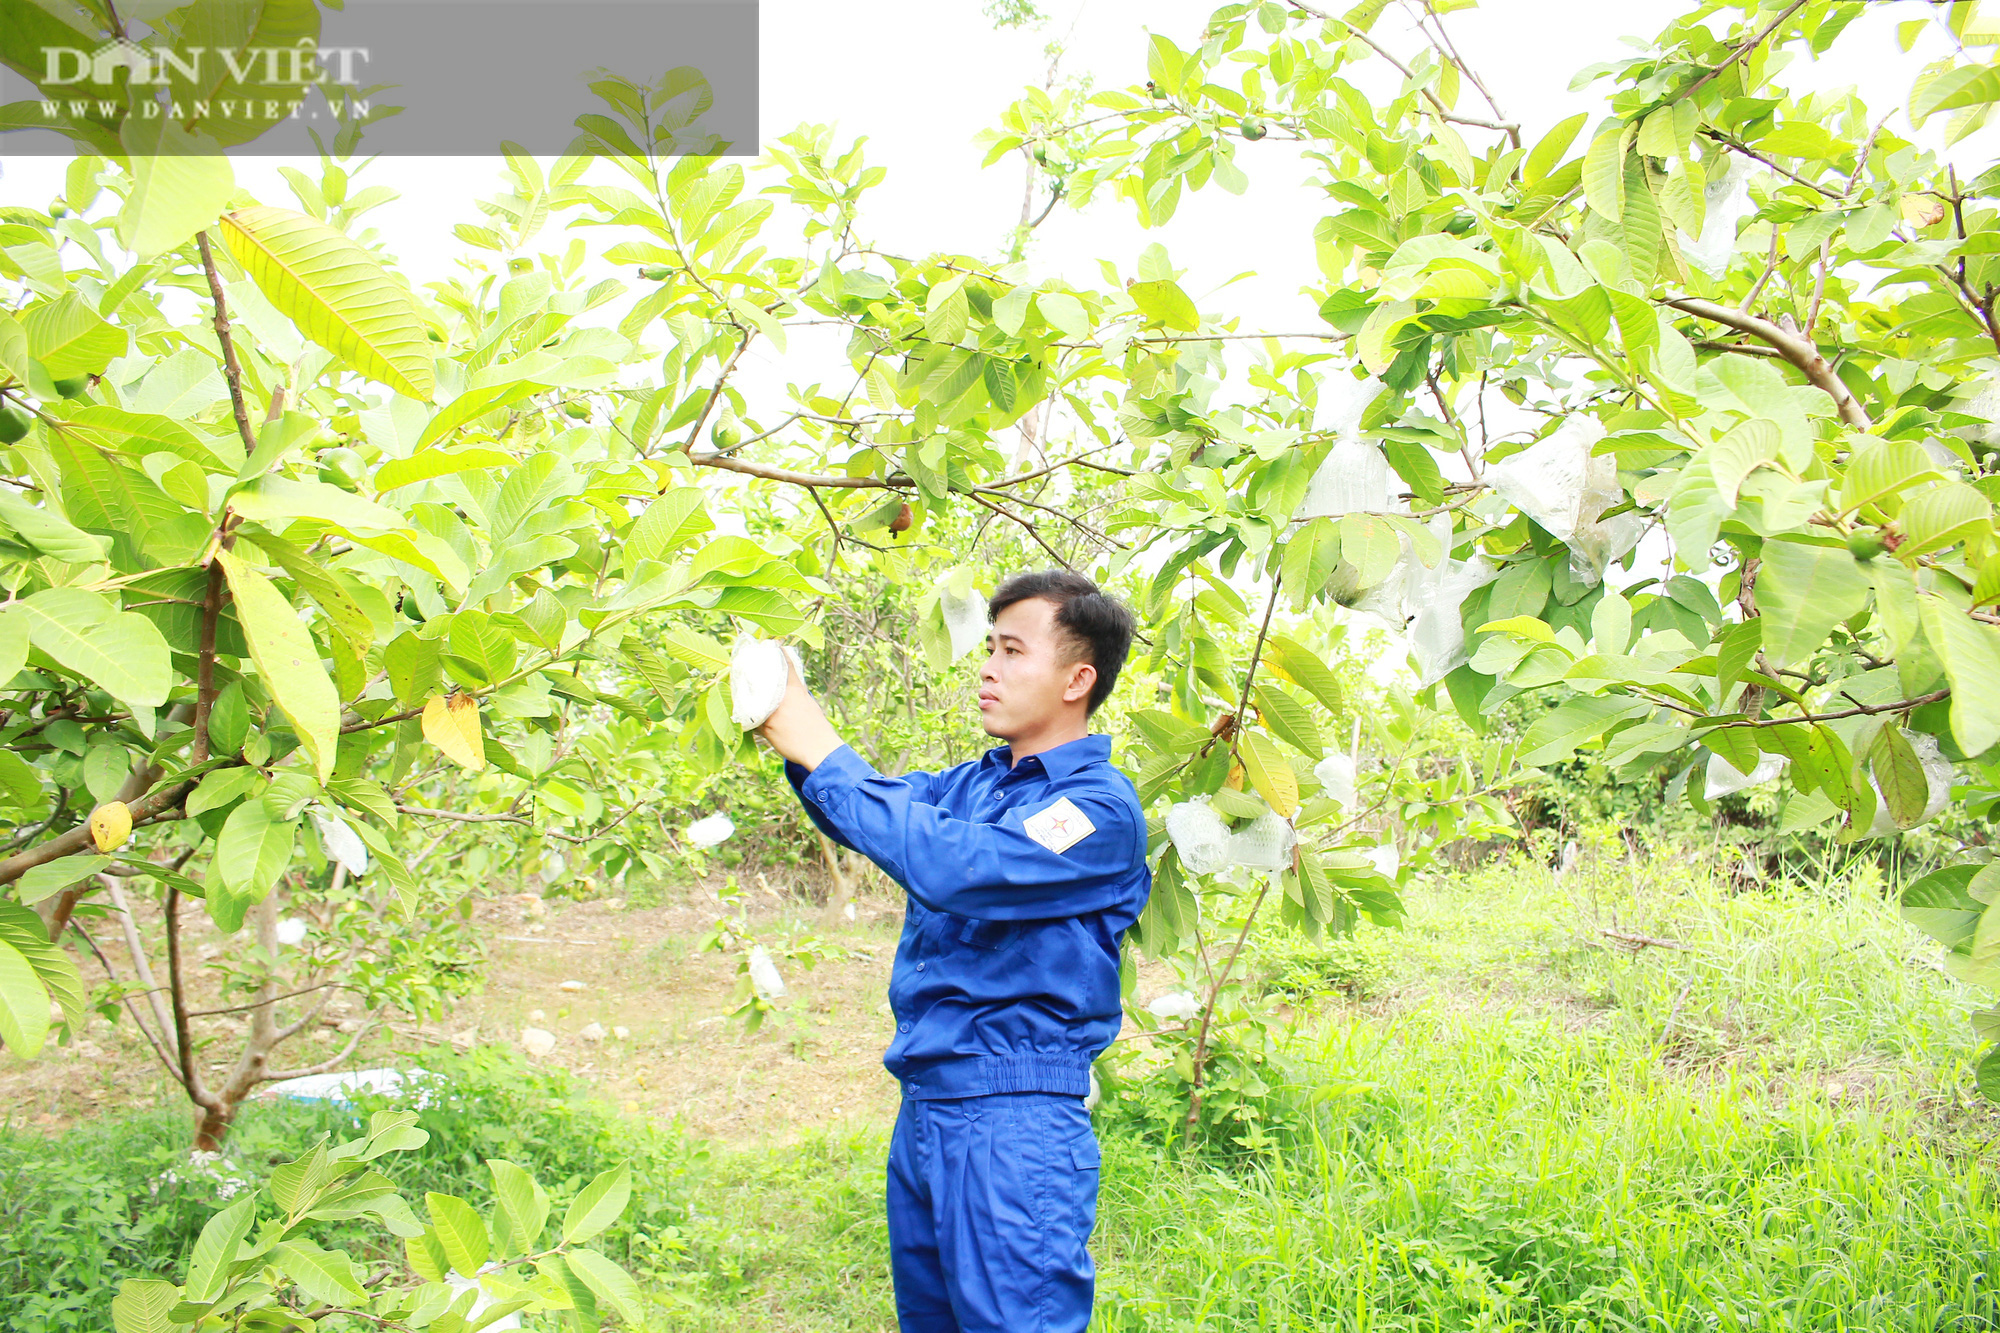 Nghệ An: Kỹ sư 9X bỏ phố về làng làm nông nghiệp công nghệ cao thu nhập tiền tỷ - Ảnh 6.